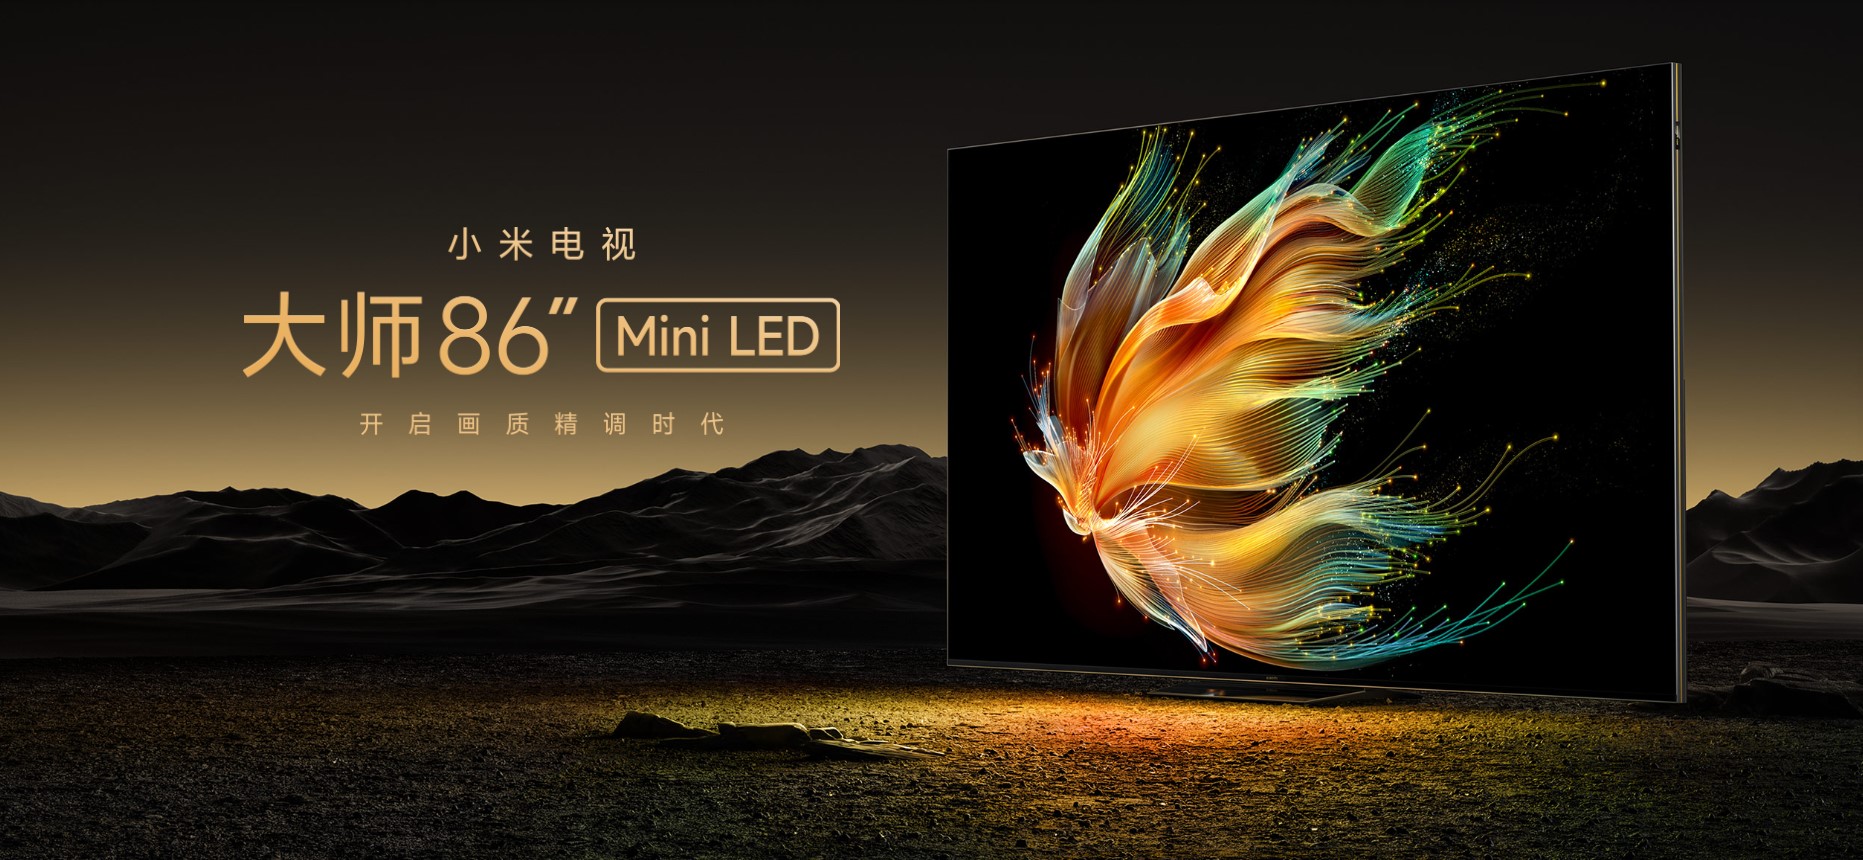 Xiaomi zaprezentowało nowy telewizor z ogromnym ekranem. Ma aż 86 cali